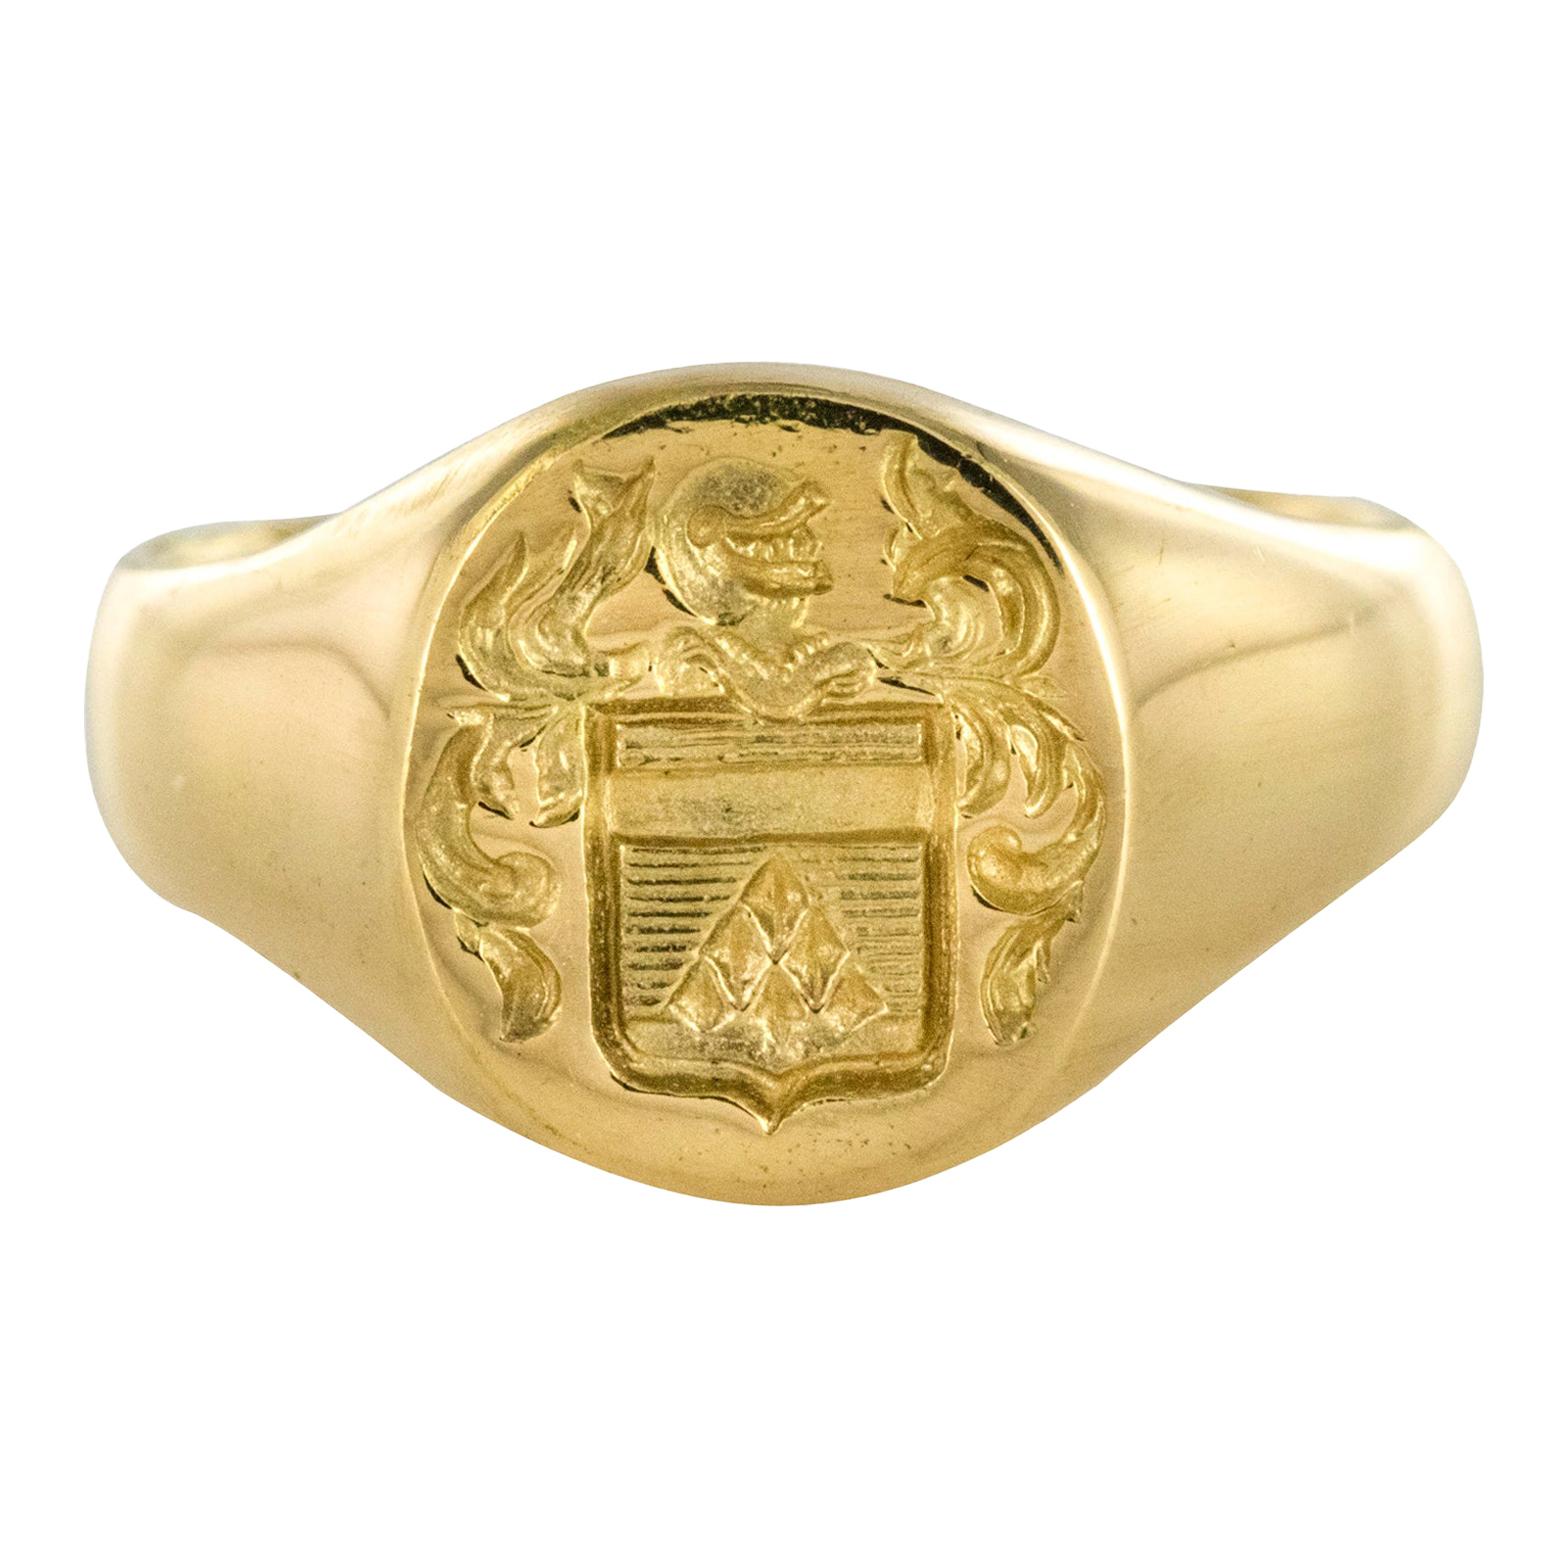 18 Karat Yellow Gold Armorial Bearings Women Signet Ring